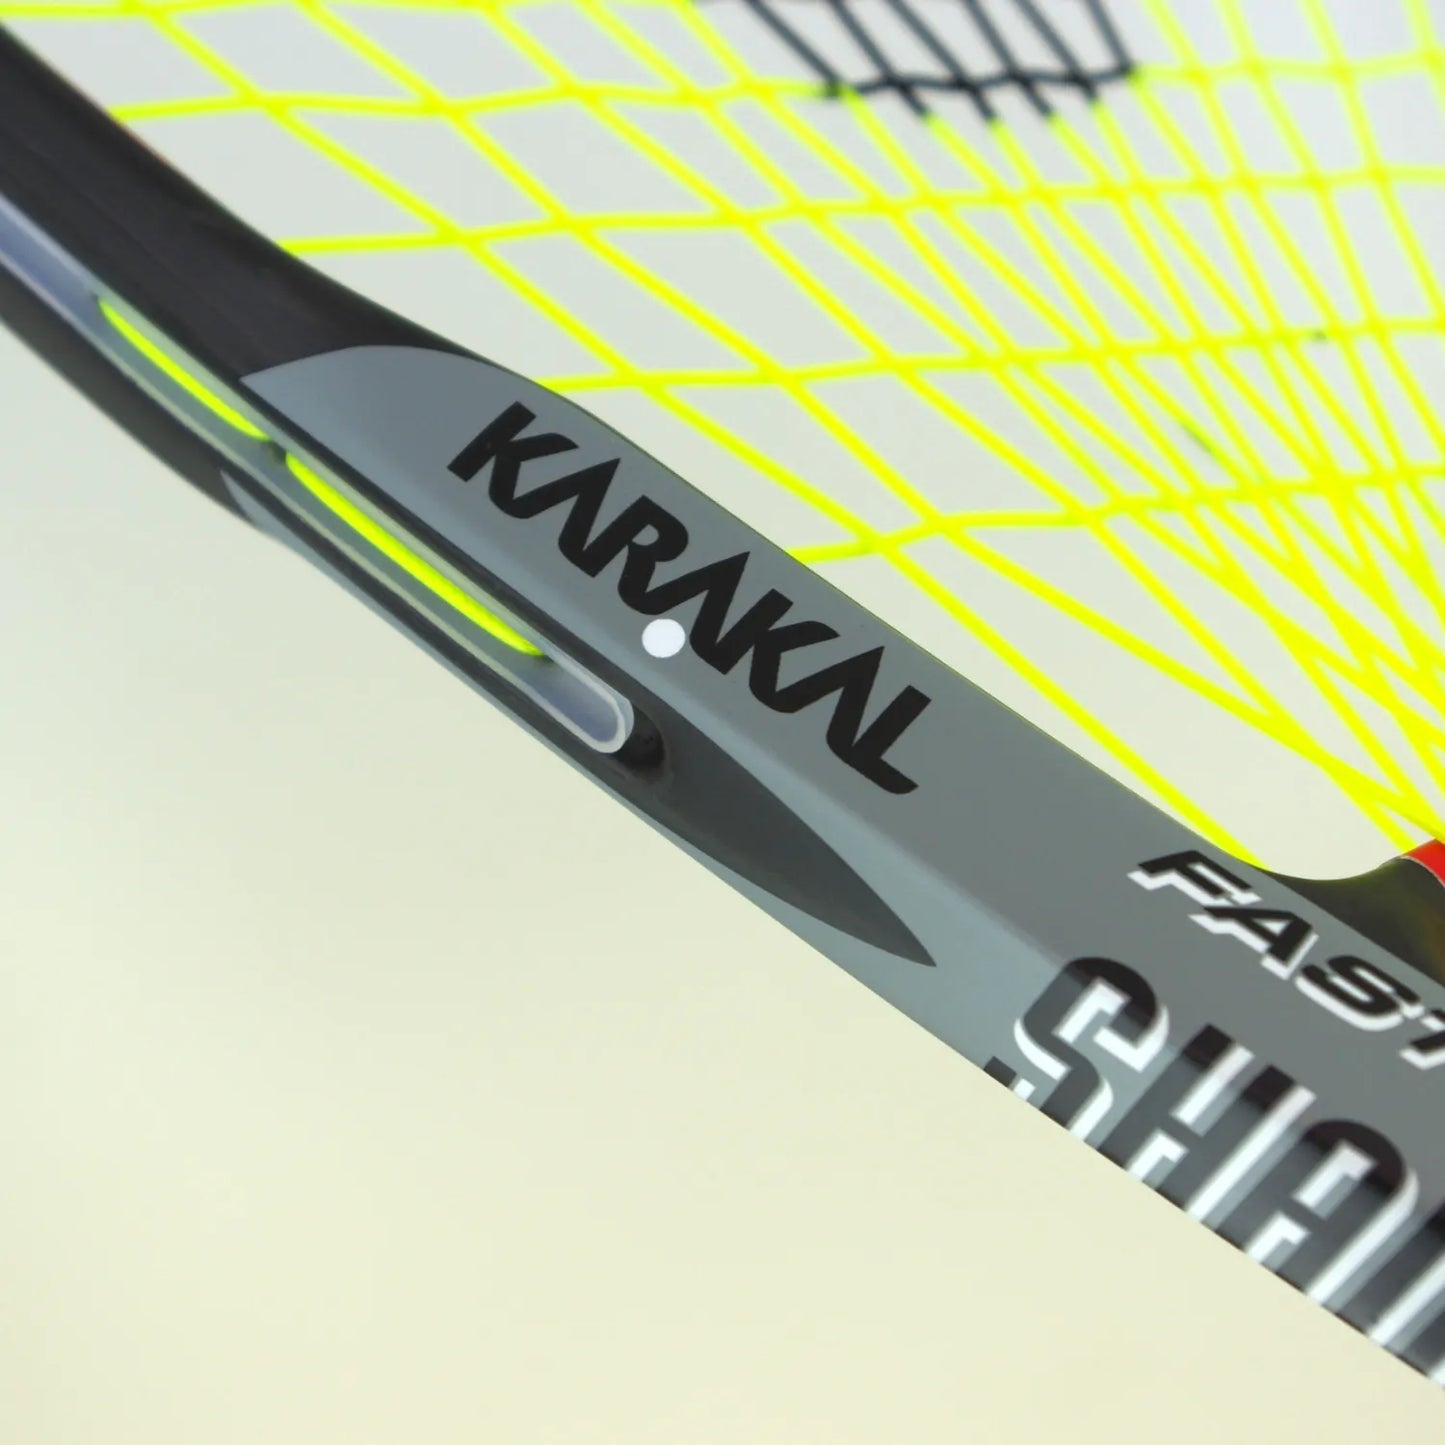 Karakal Shadow 165 Racketball Racket